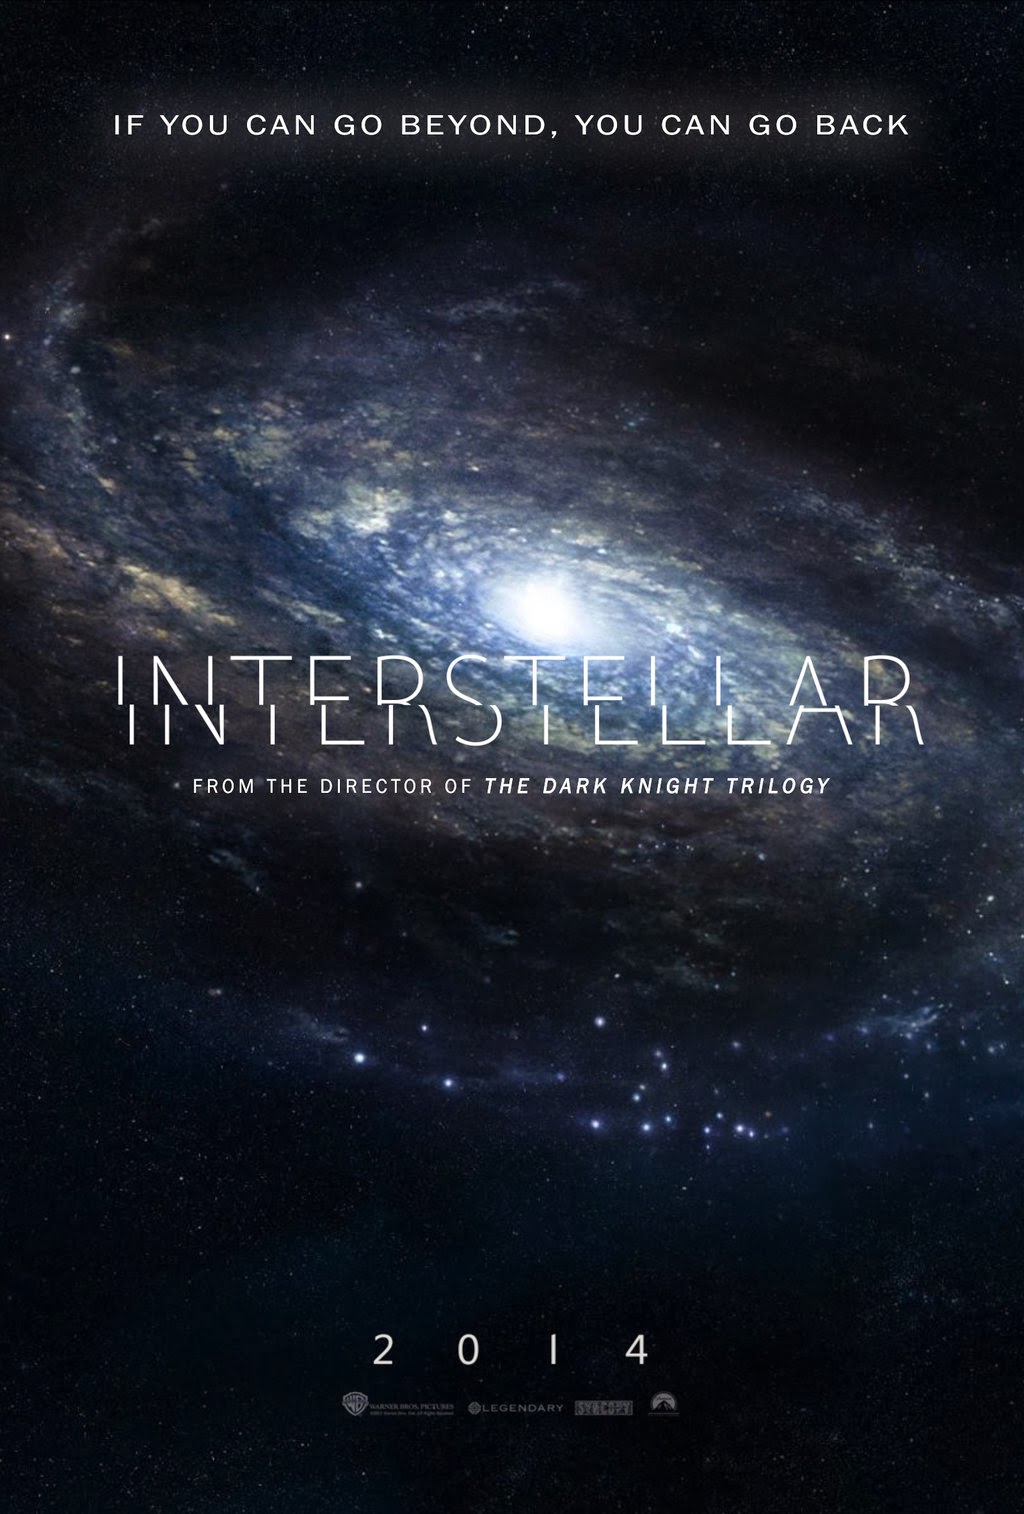 ｃｉａ こちら映画中央情報局です Interstellar クリス ノーラン監督最新作の本格sf映画 インターステラー の予告編を ザ ホビット ザ デソレイション オブ スマウグ の冒頭で世界初公開することを ワーナー ブラザースが決定